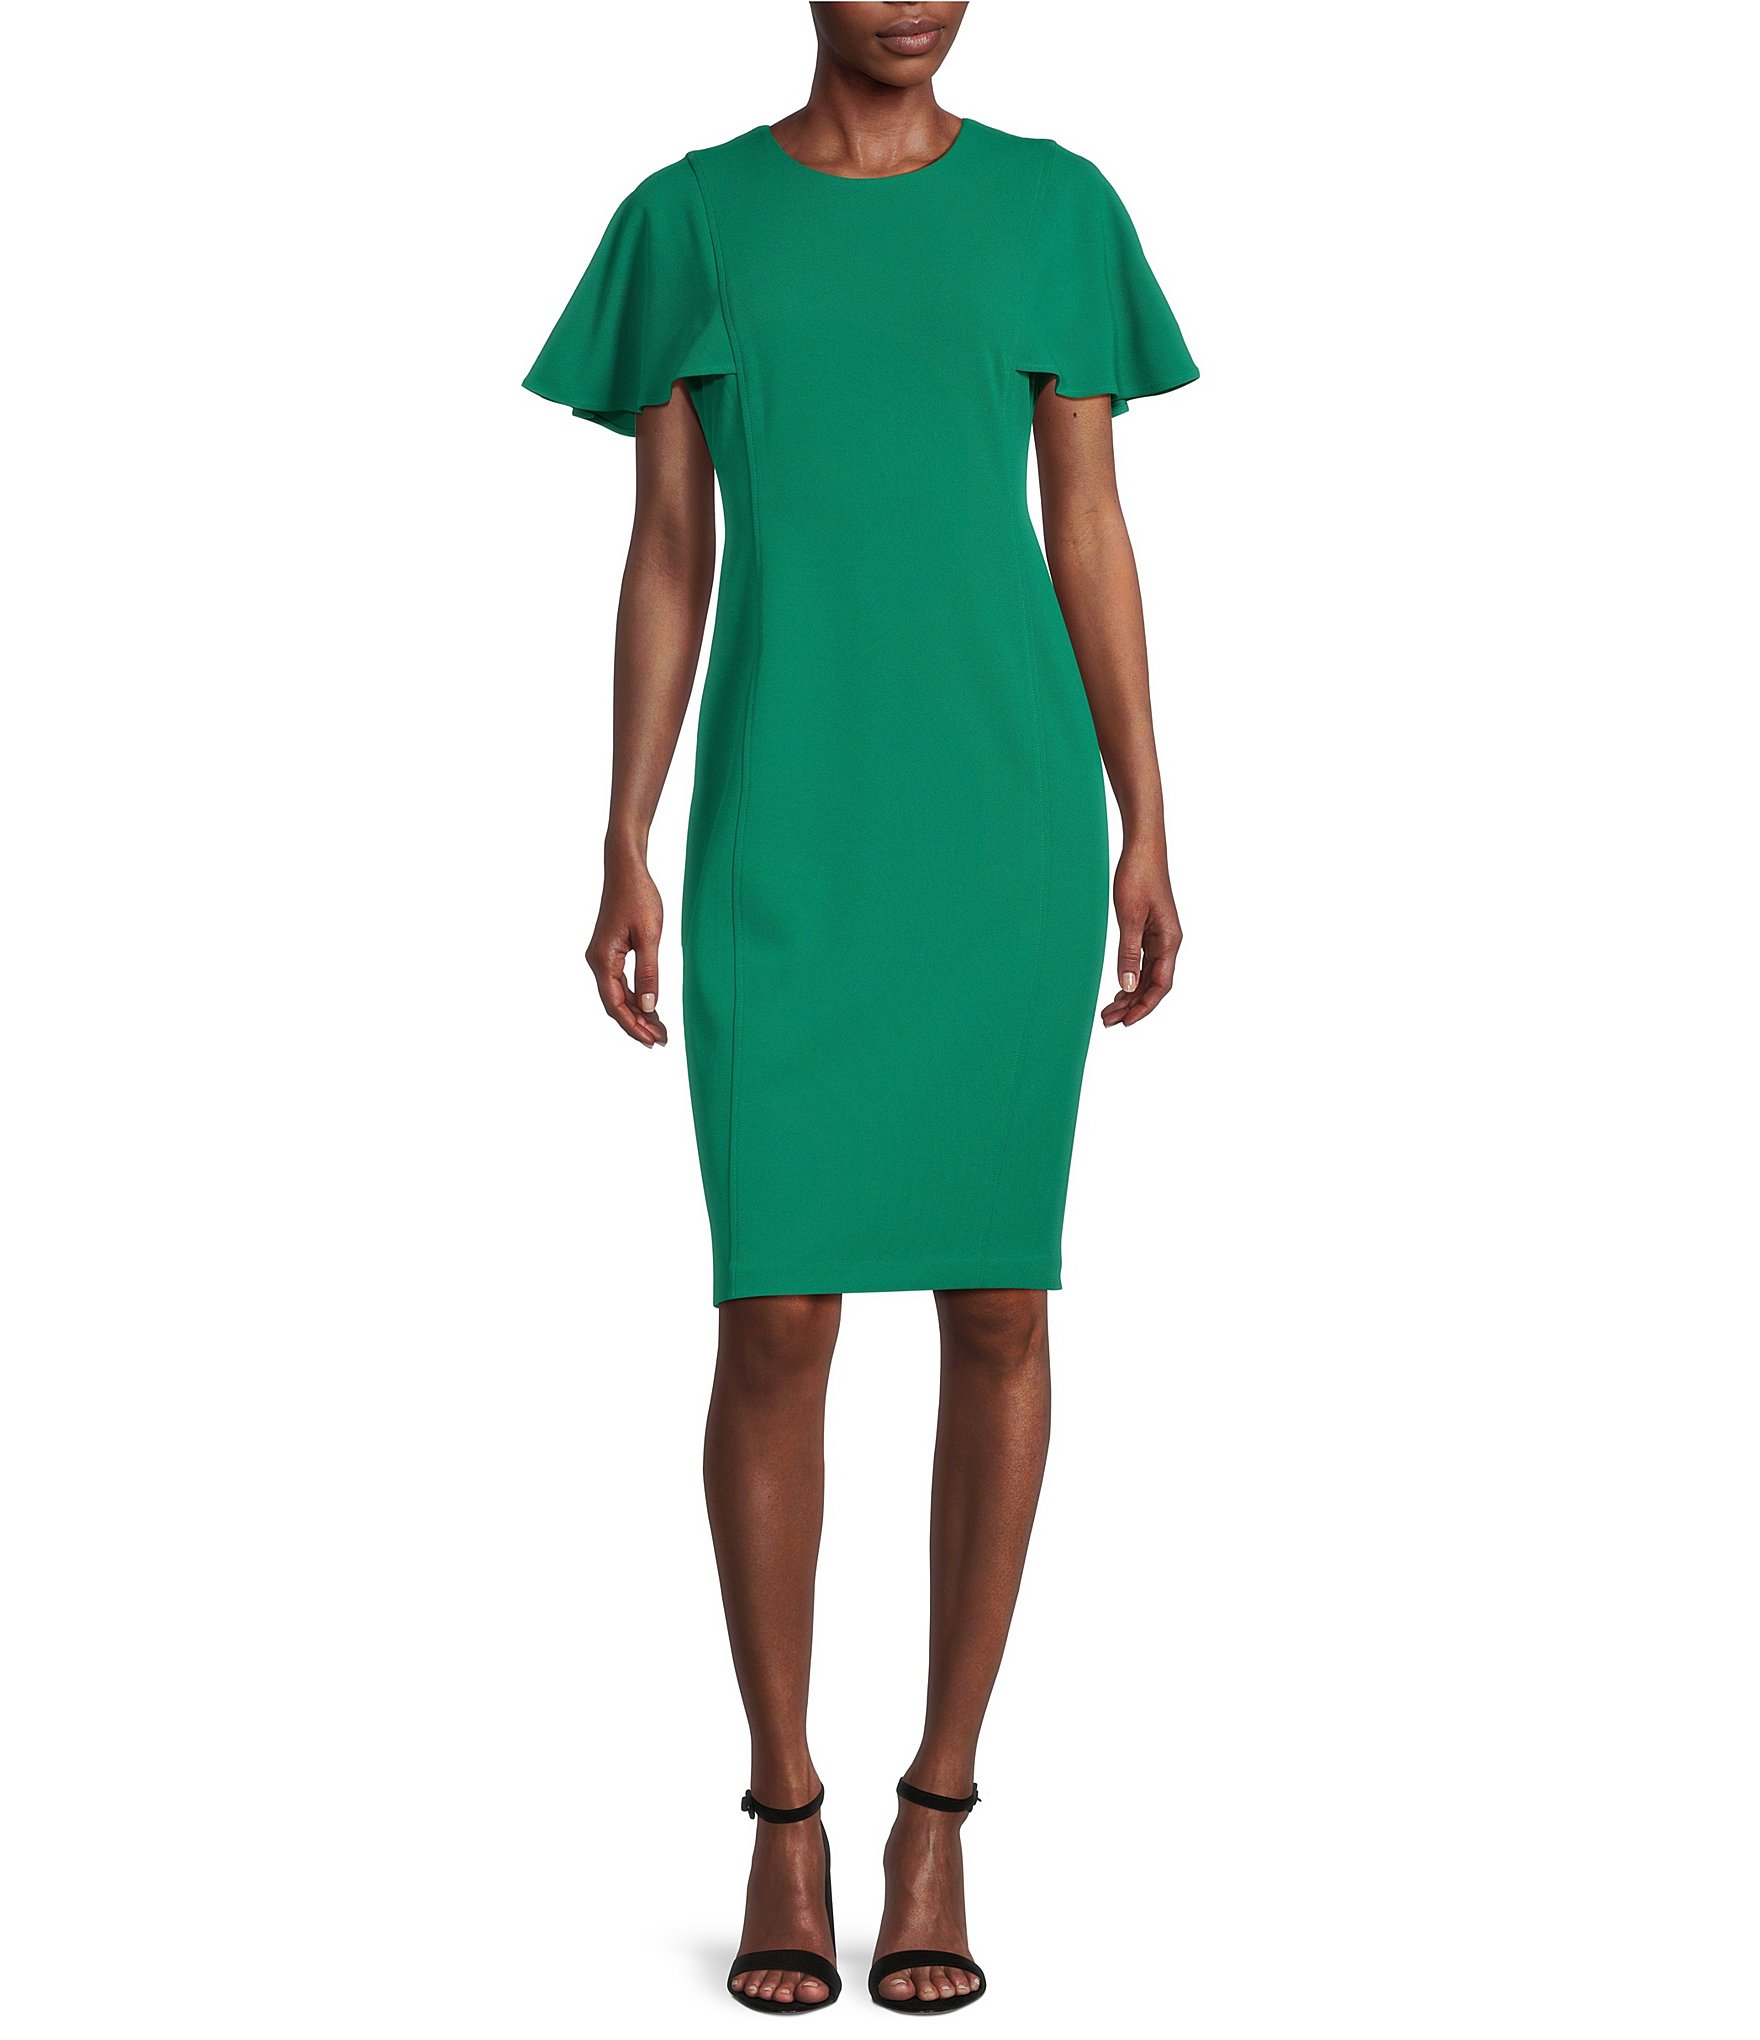 Descubrir 34+ imagen calvin klein dark green dress - Thptnganamst.edu.vn